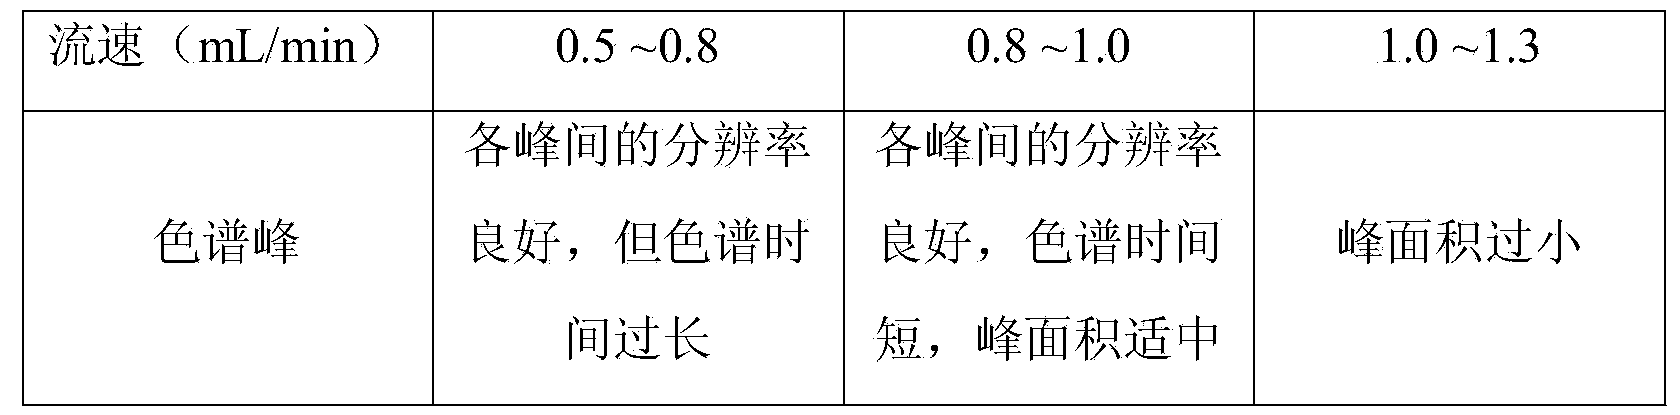 Method for determining specnuezhenide content in Zhenqifuzheng preparation